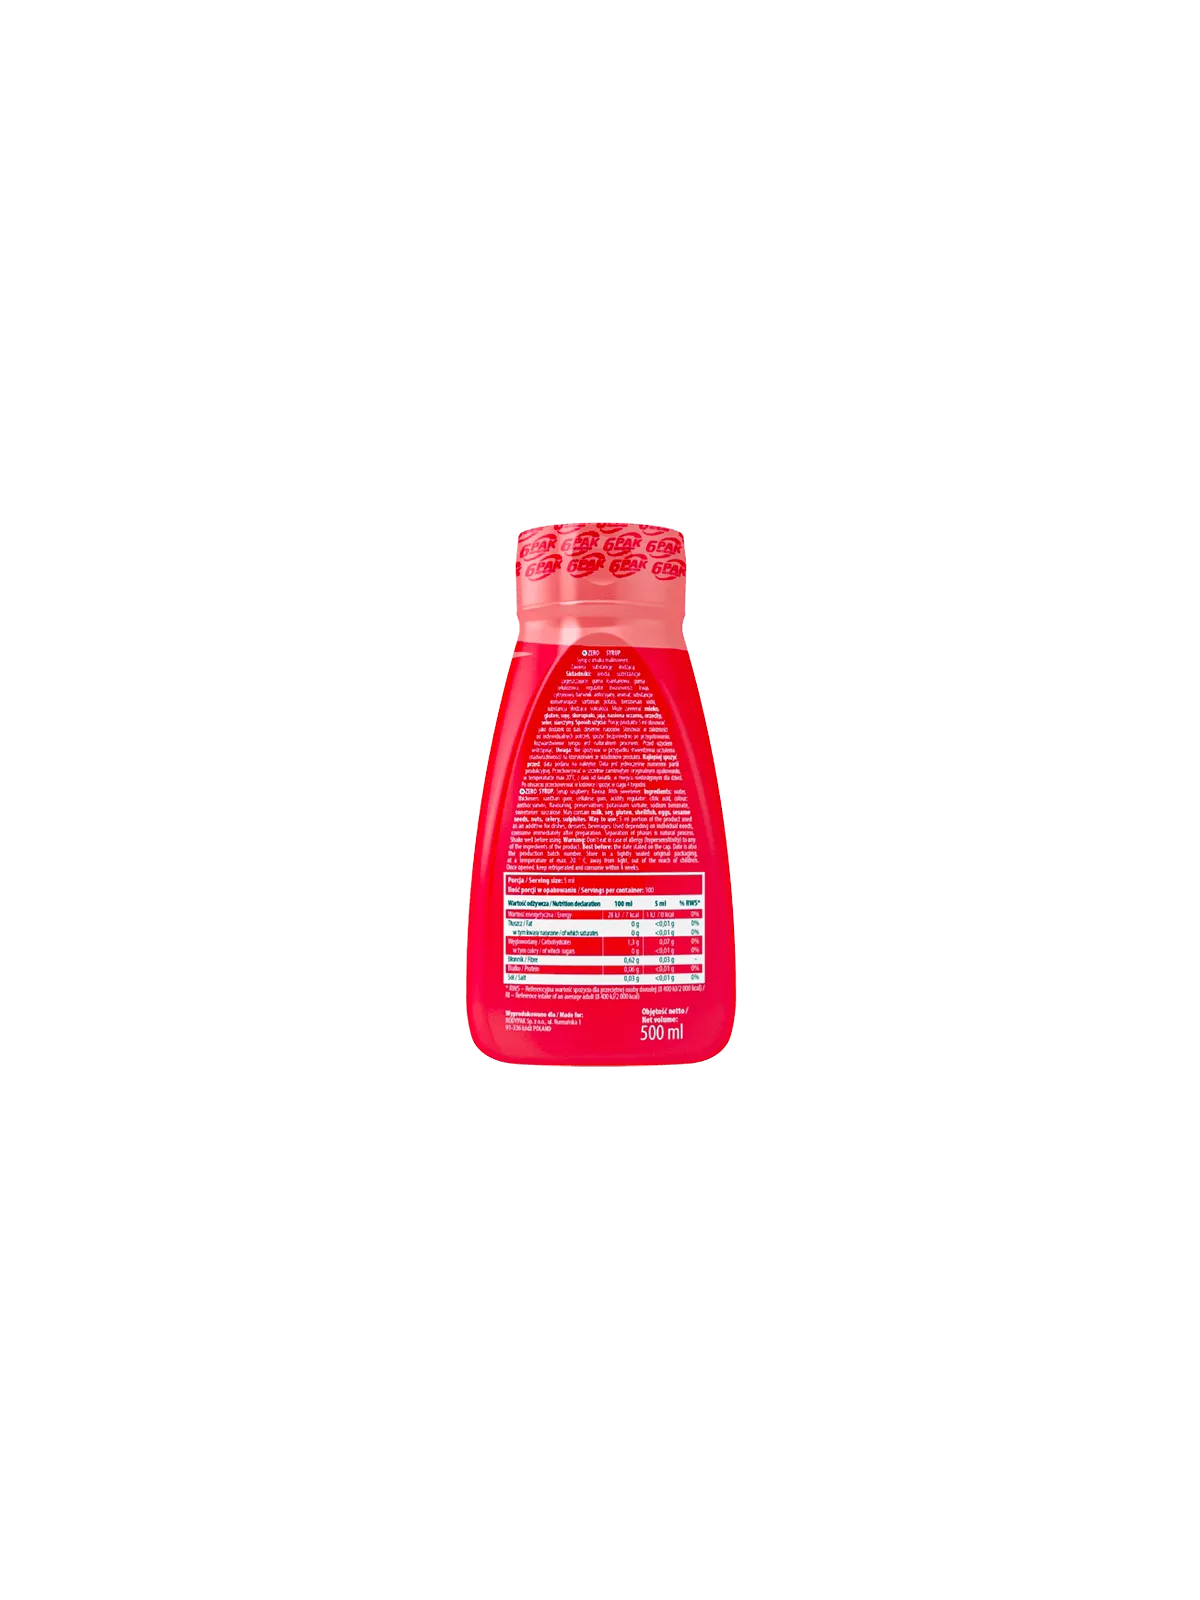 Syrup ZERO Raspberry - Sos ZERO o smaku malinowym - 500ml